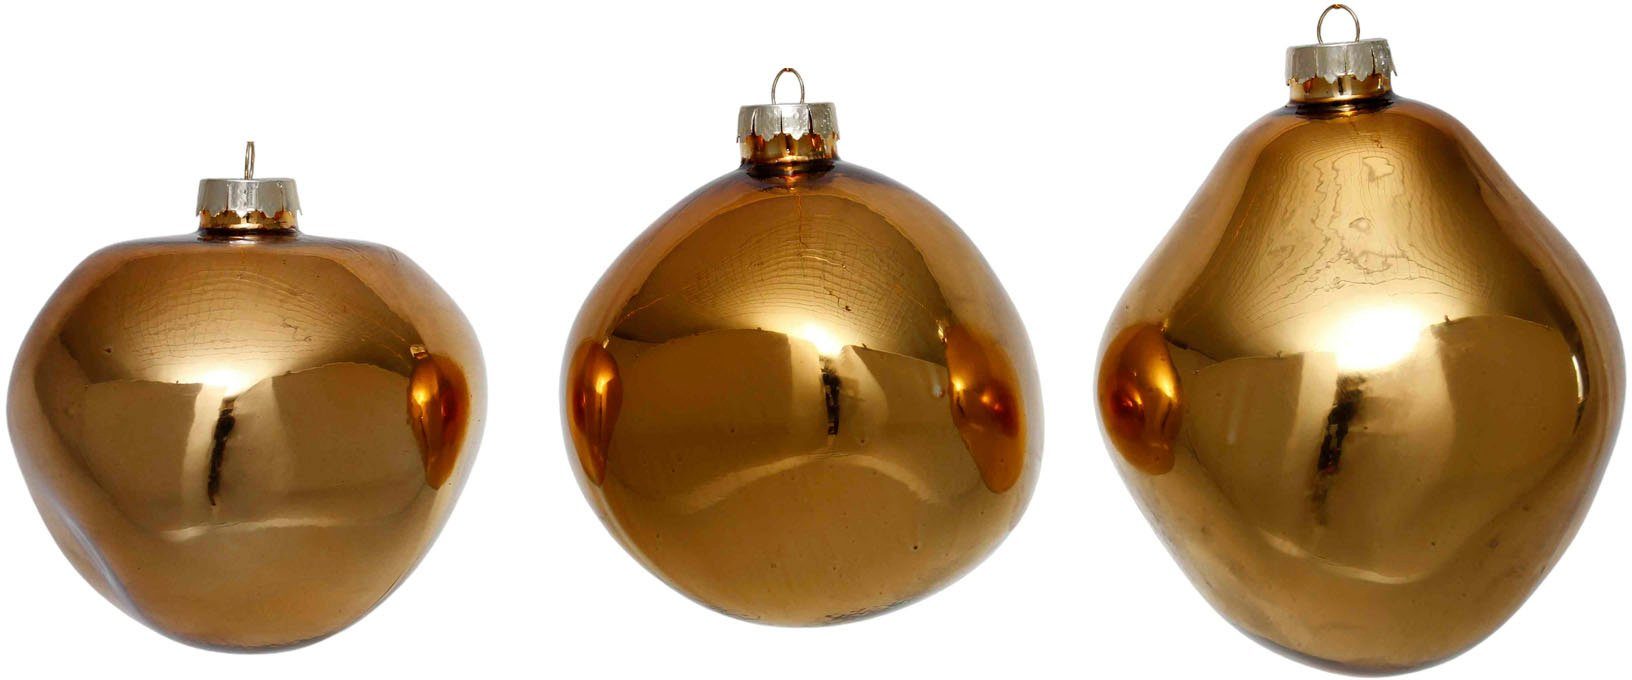 Leonique Weihnachtsbaumkugel Birdelle glänzend, Weihnachtsdeko, Christbaumschmuck, Christbaumkugeln (3 St), Baumkugeln in organischer Form, Ø 10 cm, organische Kugeln aus Glas goldfarben